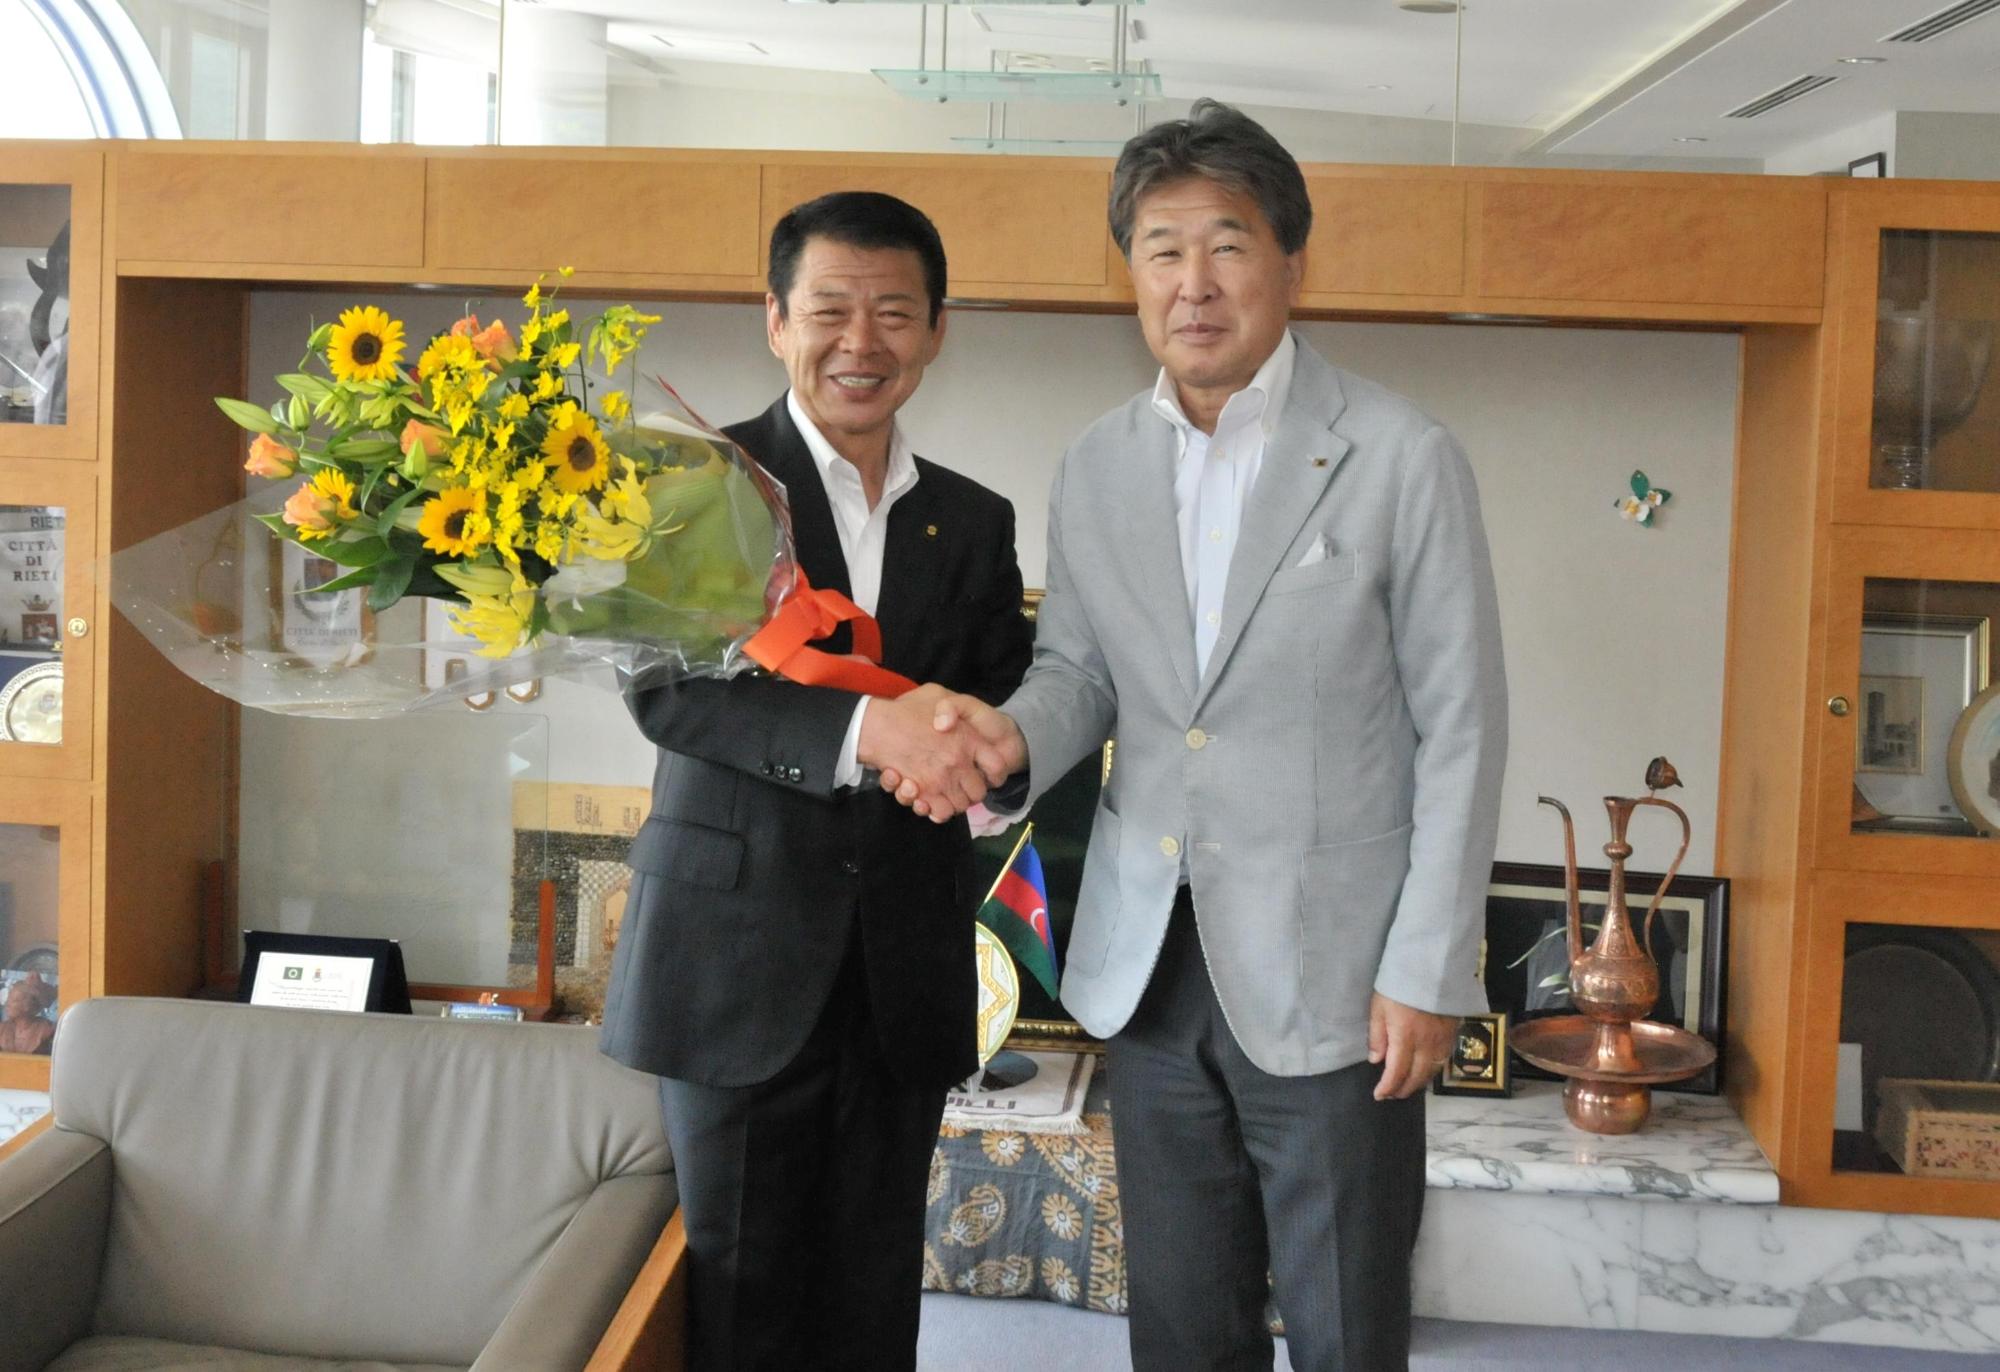 2017年7月5日花束を持ち竹山専務理事と握手をする市長の写真